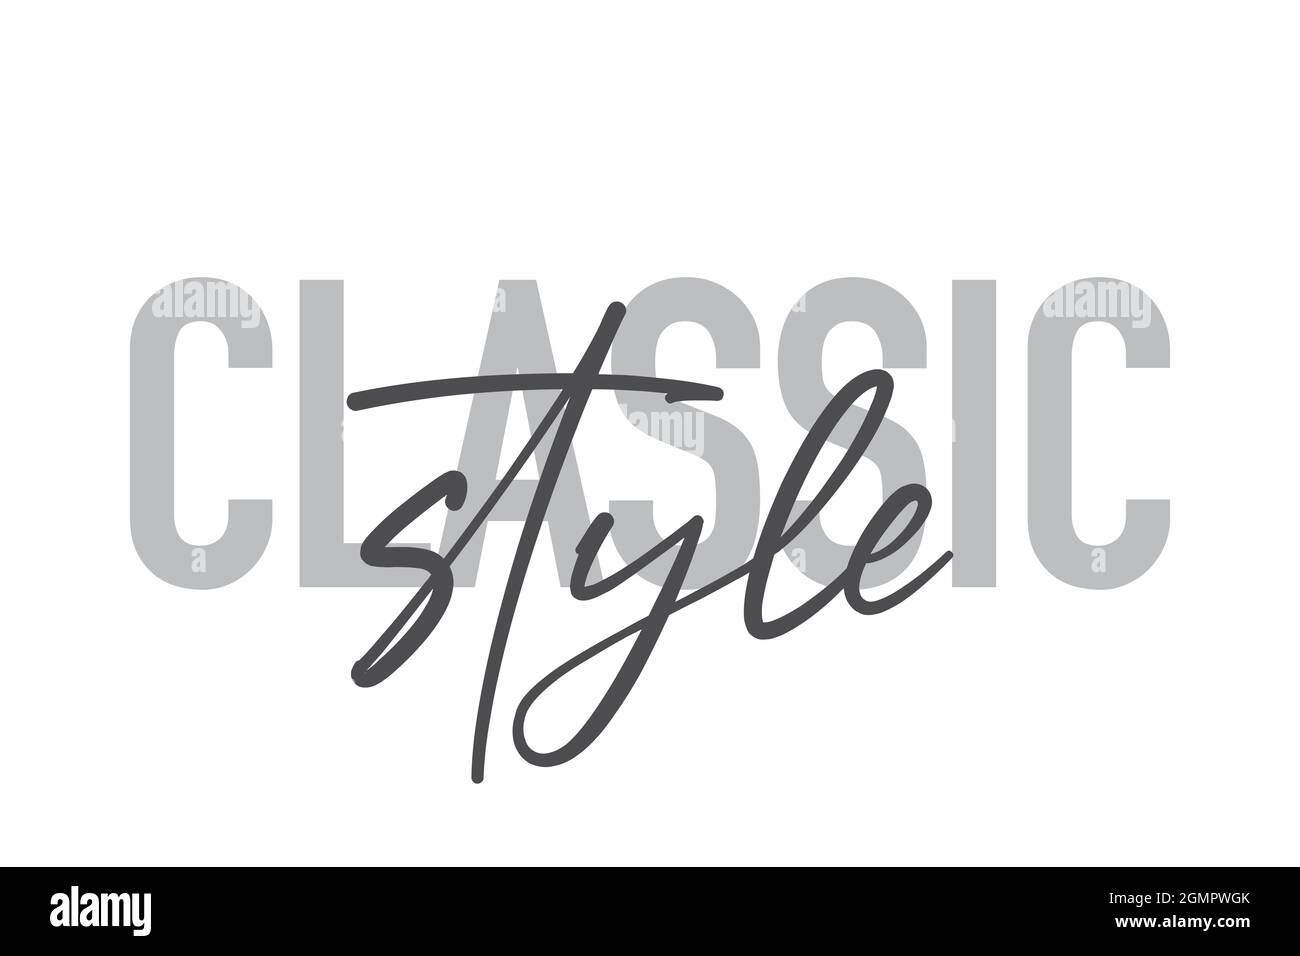 Modernes, schlichtes, minimalistisches typografisches Design eines Sprichwort „Classic Style“ in Grautönen. Coole, urbane, trendige und verspielte Grafik-Vektorgrafik mit Stockfoto